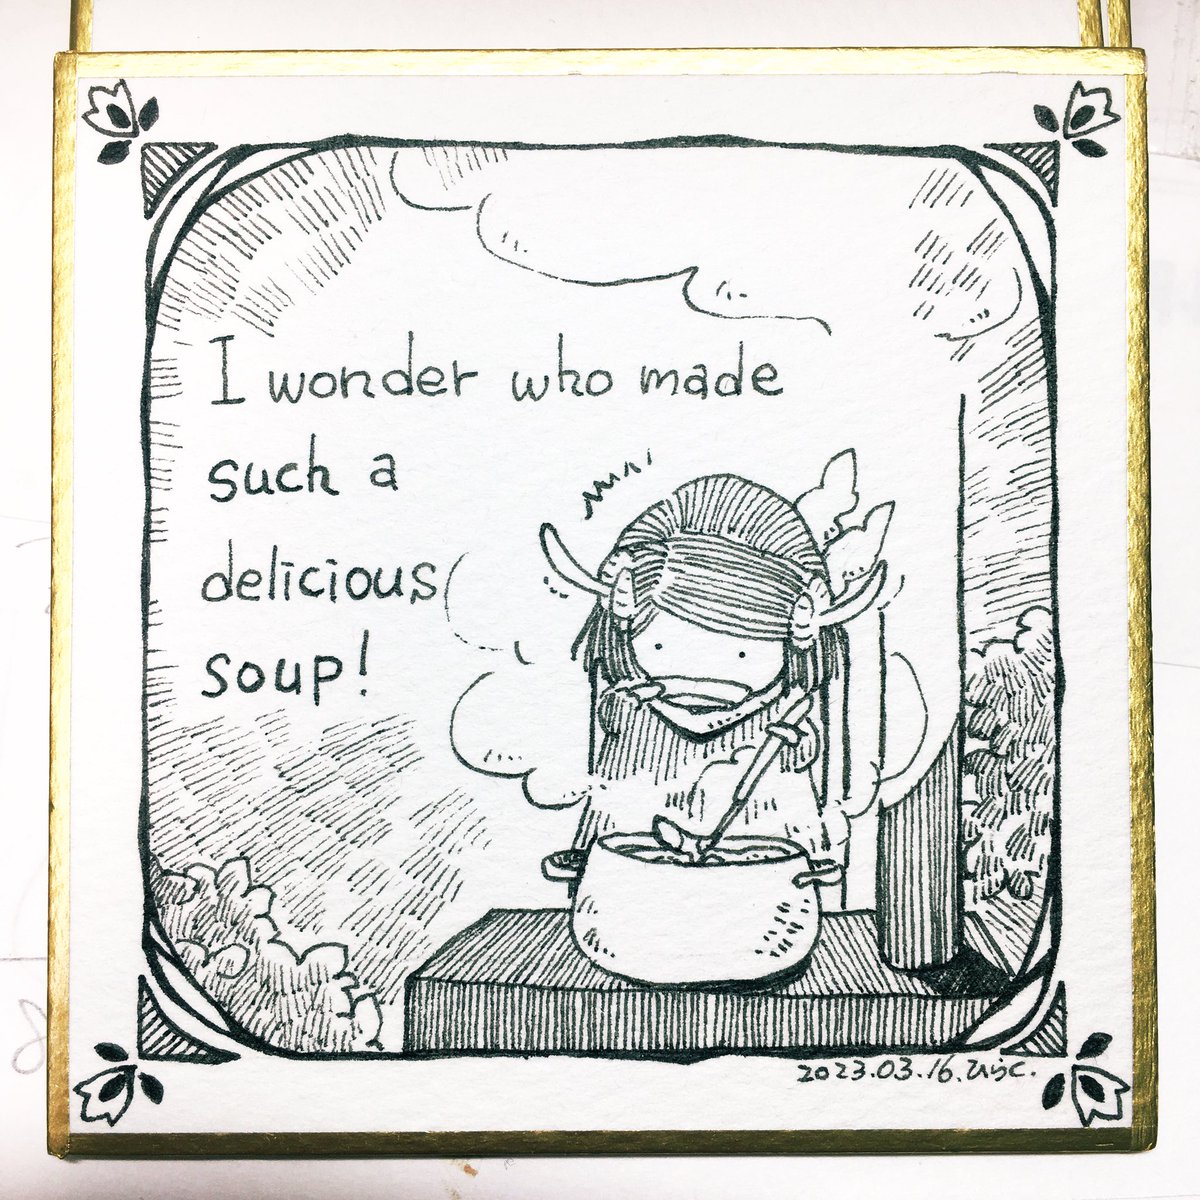 3/16:
こんなおいしいスープを作ったのはどこのどなたでしょう!

 #Pavot  #ペン画 